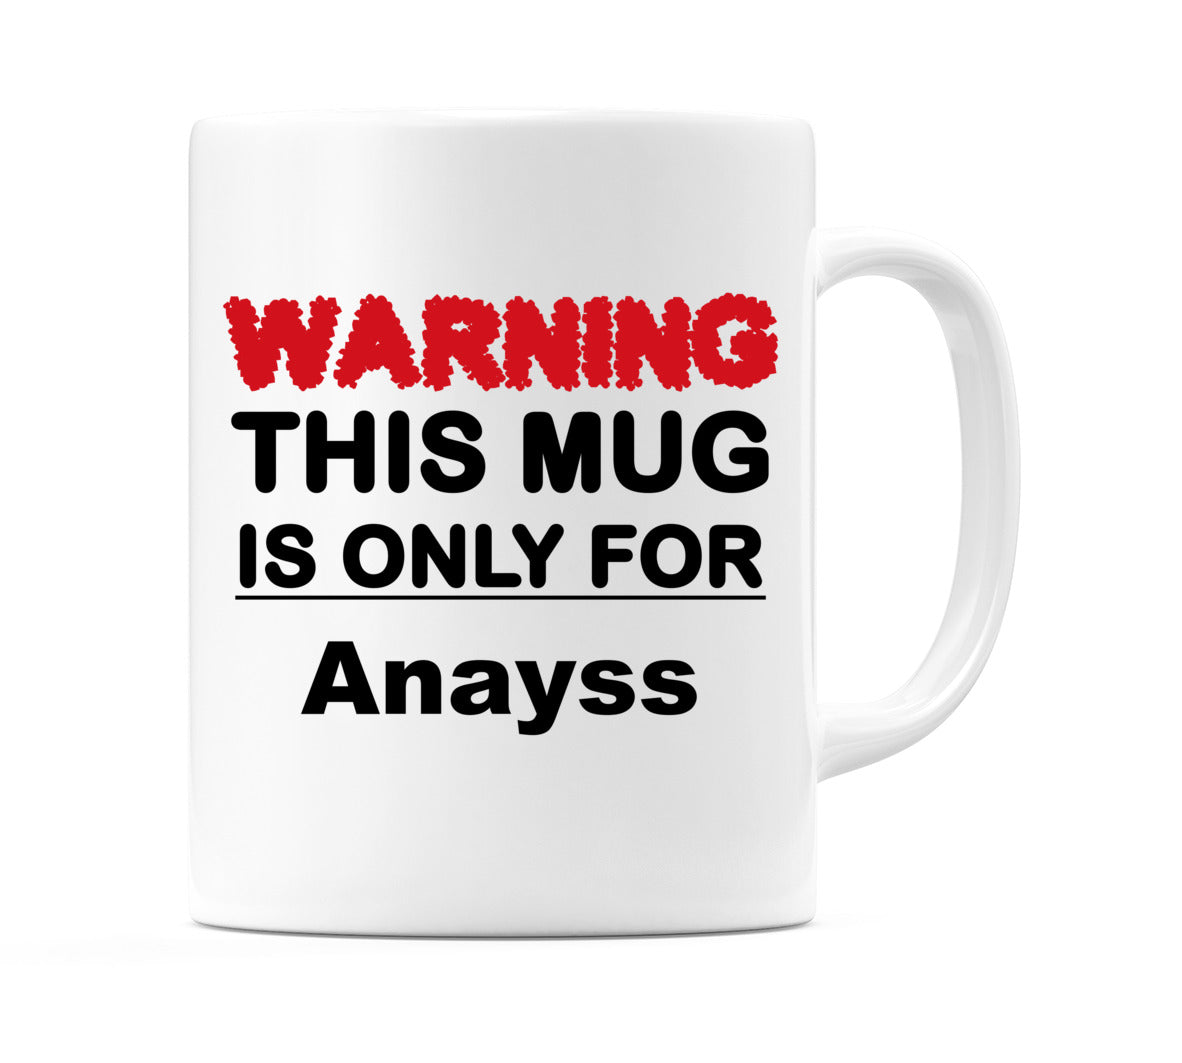 Warning This Mug is ONLY for Anayss Mug